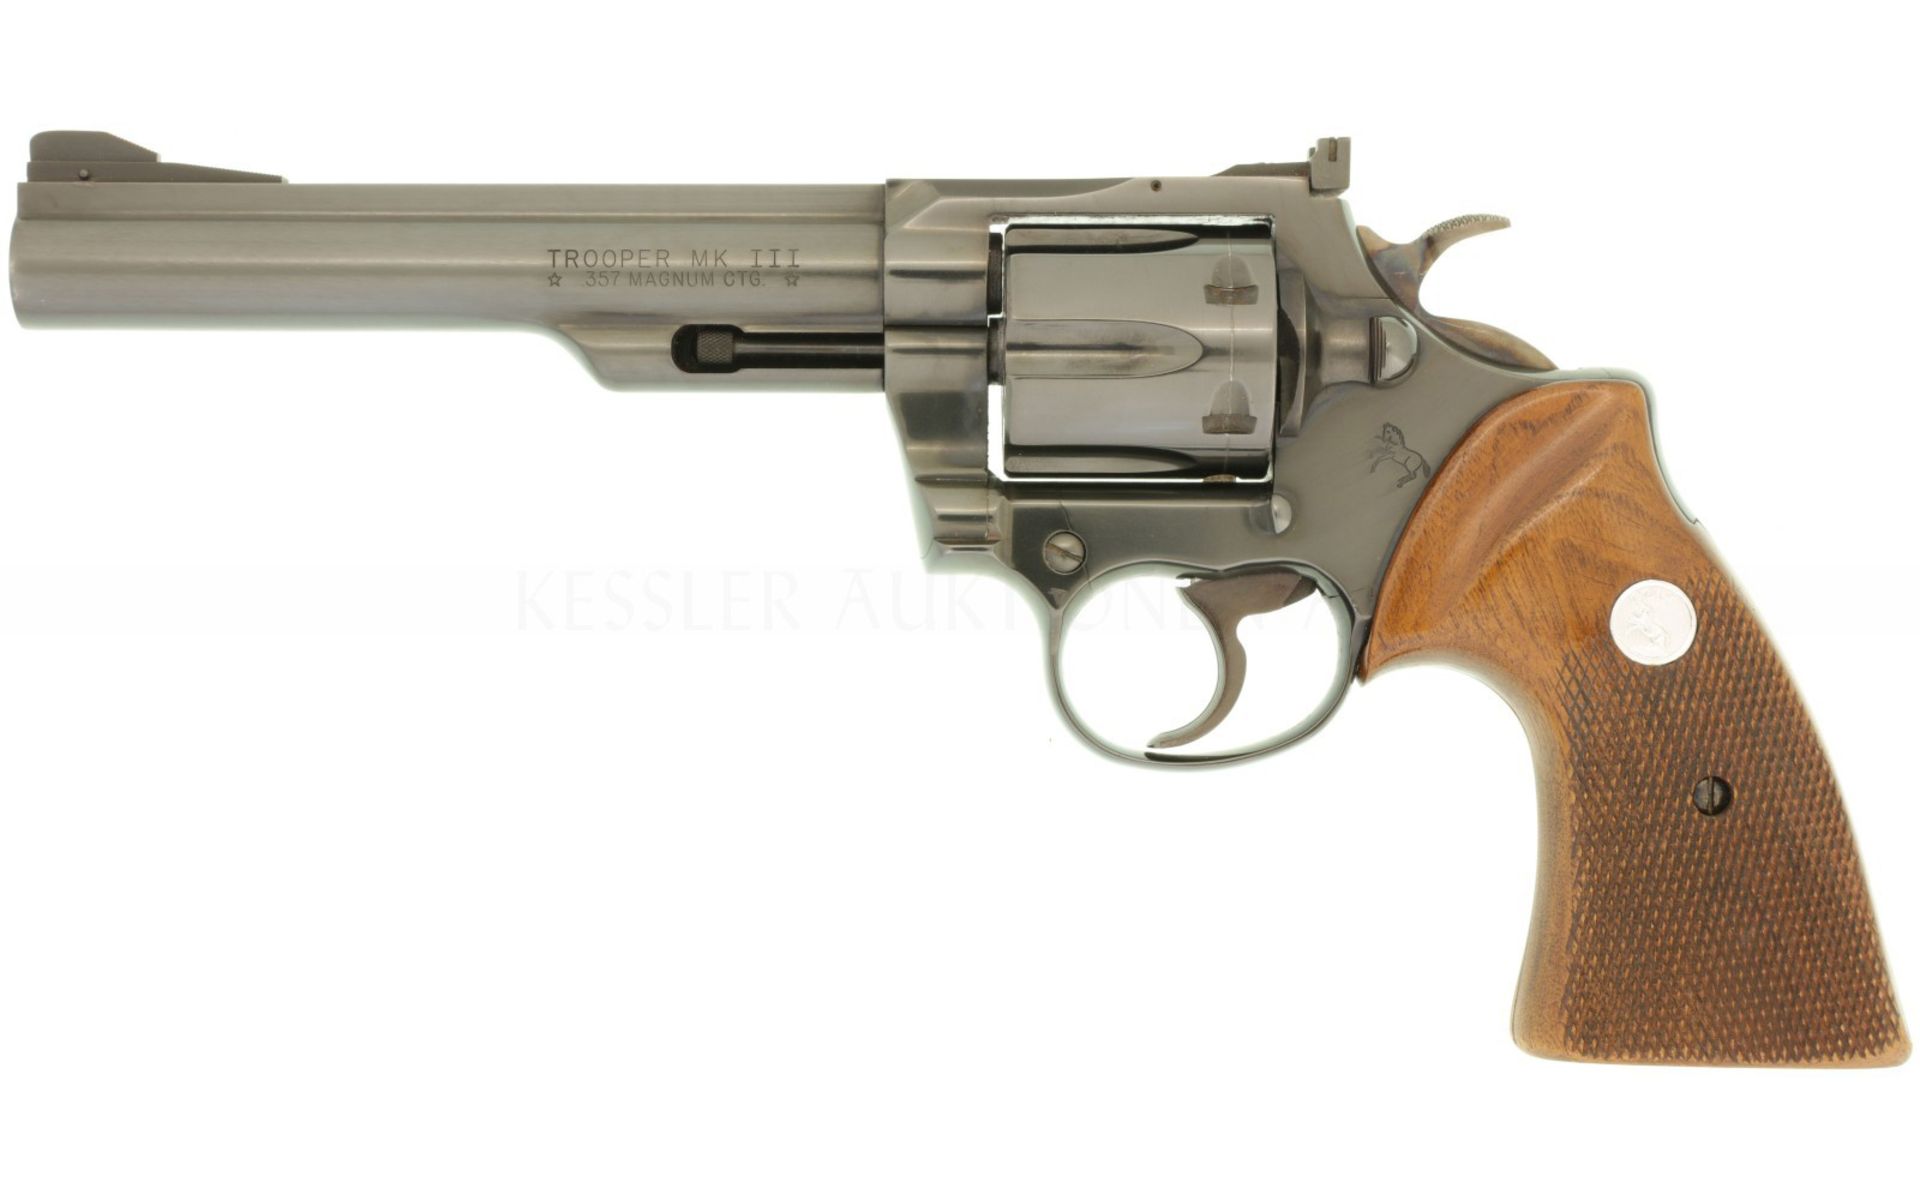 Revolver, Colt Trooper MK III, Kal. .357Mag